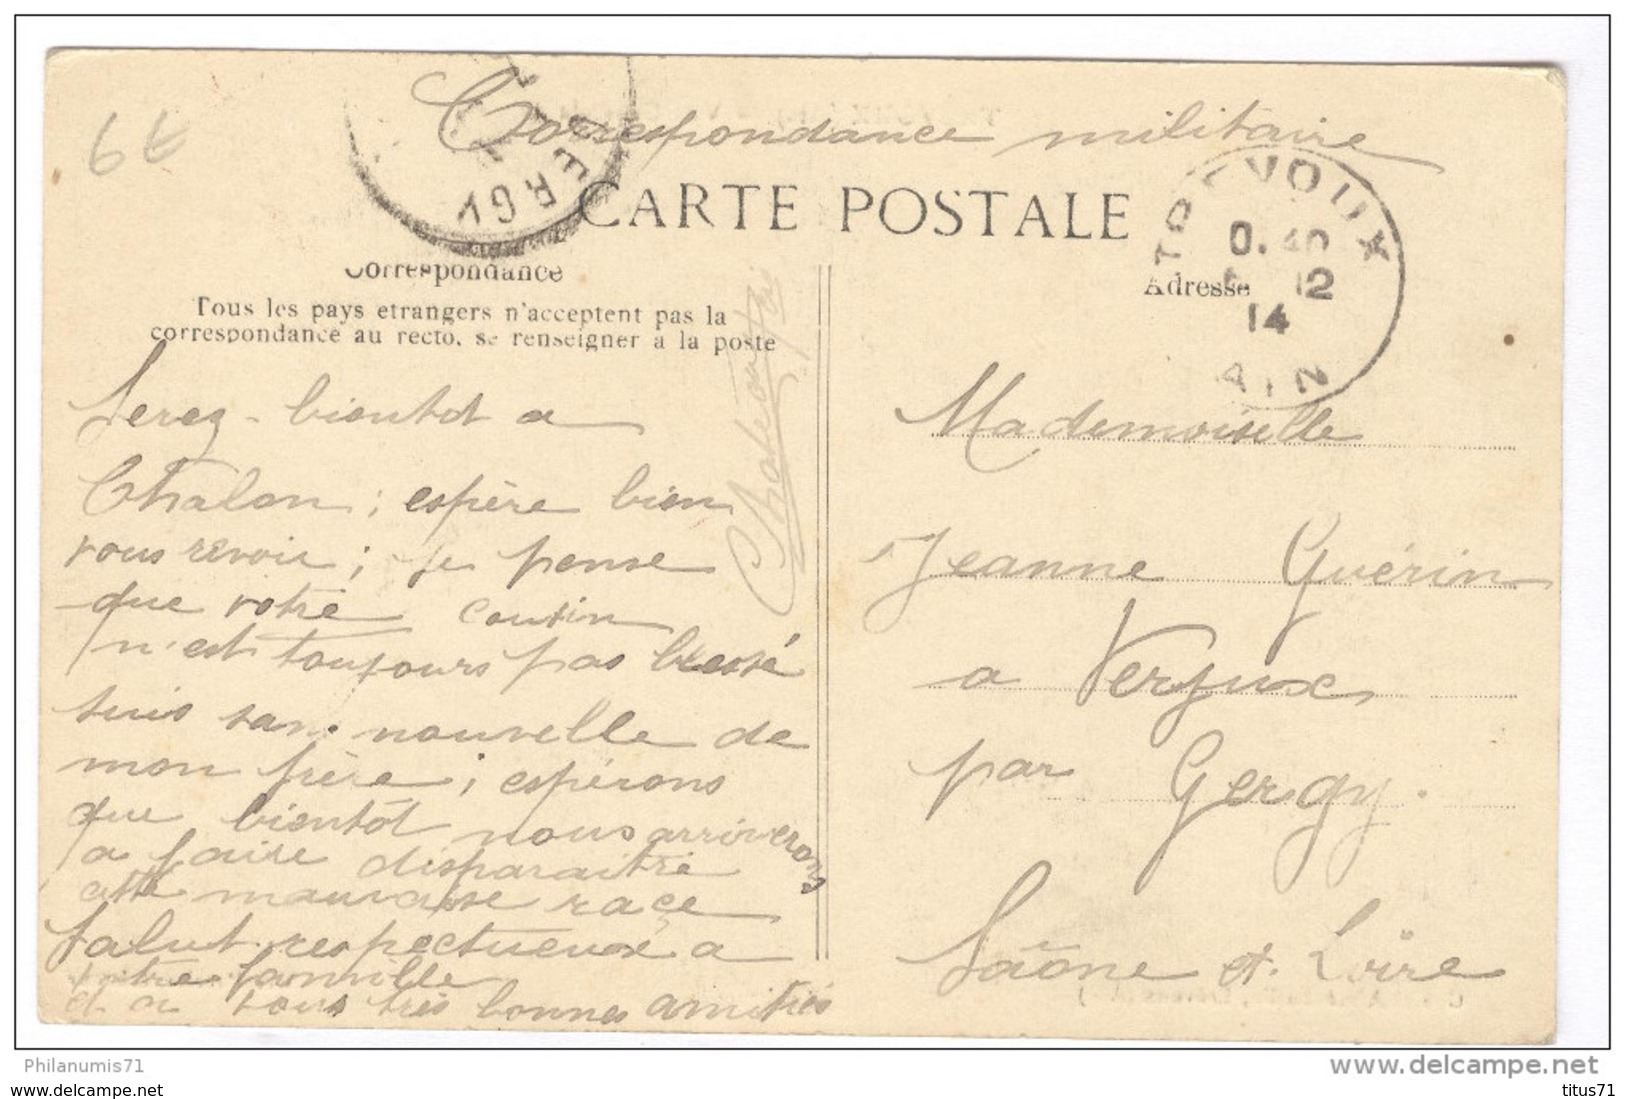 CPA Trévoux - Vue Générale - Circulée En 1914 - Trévoux